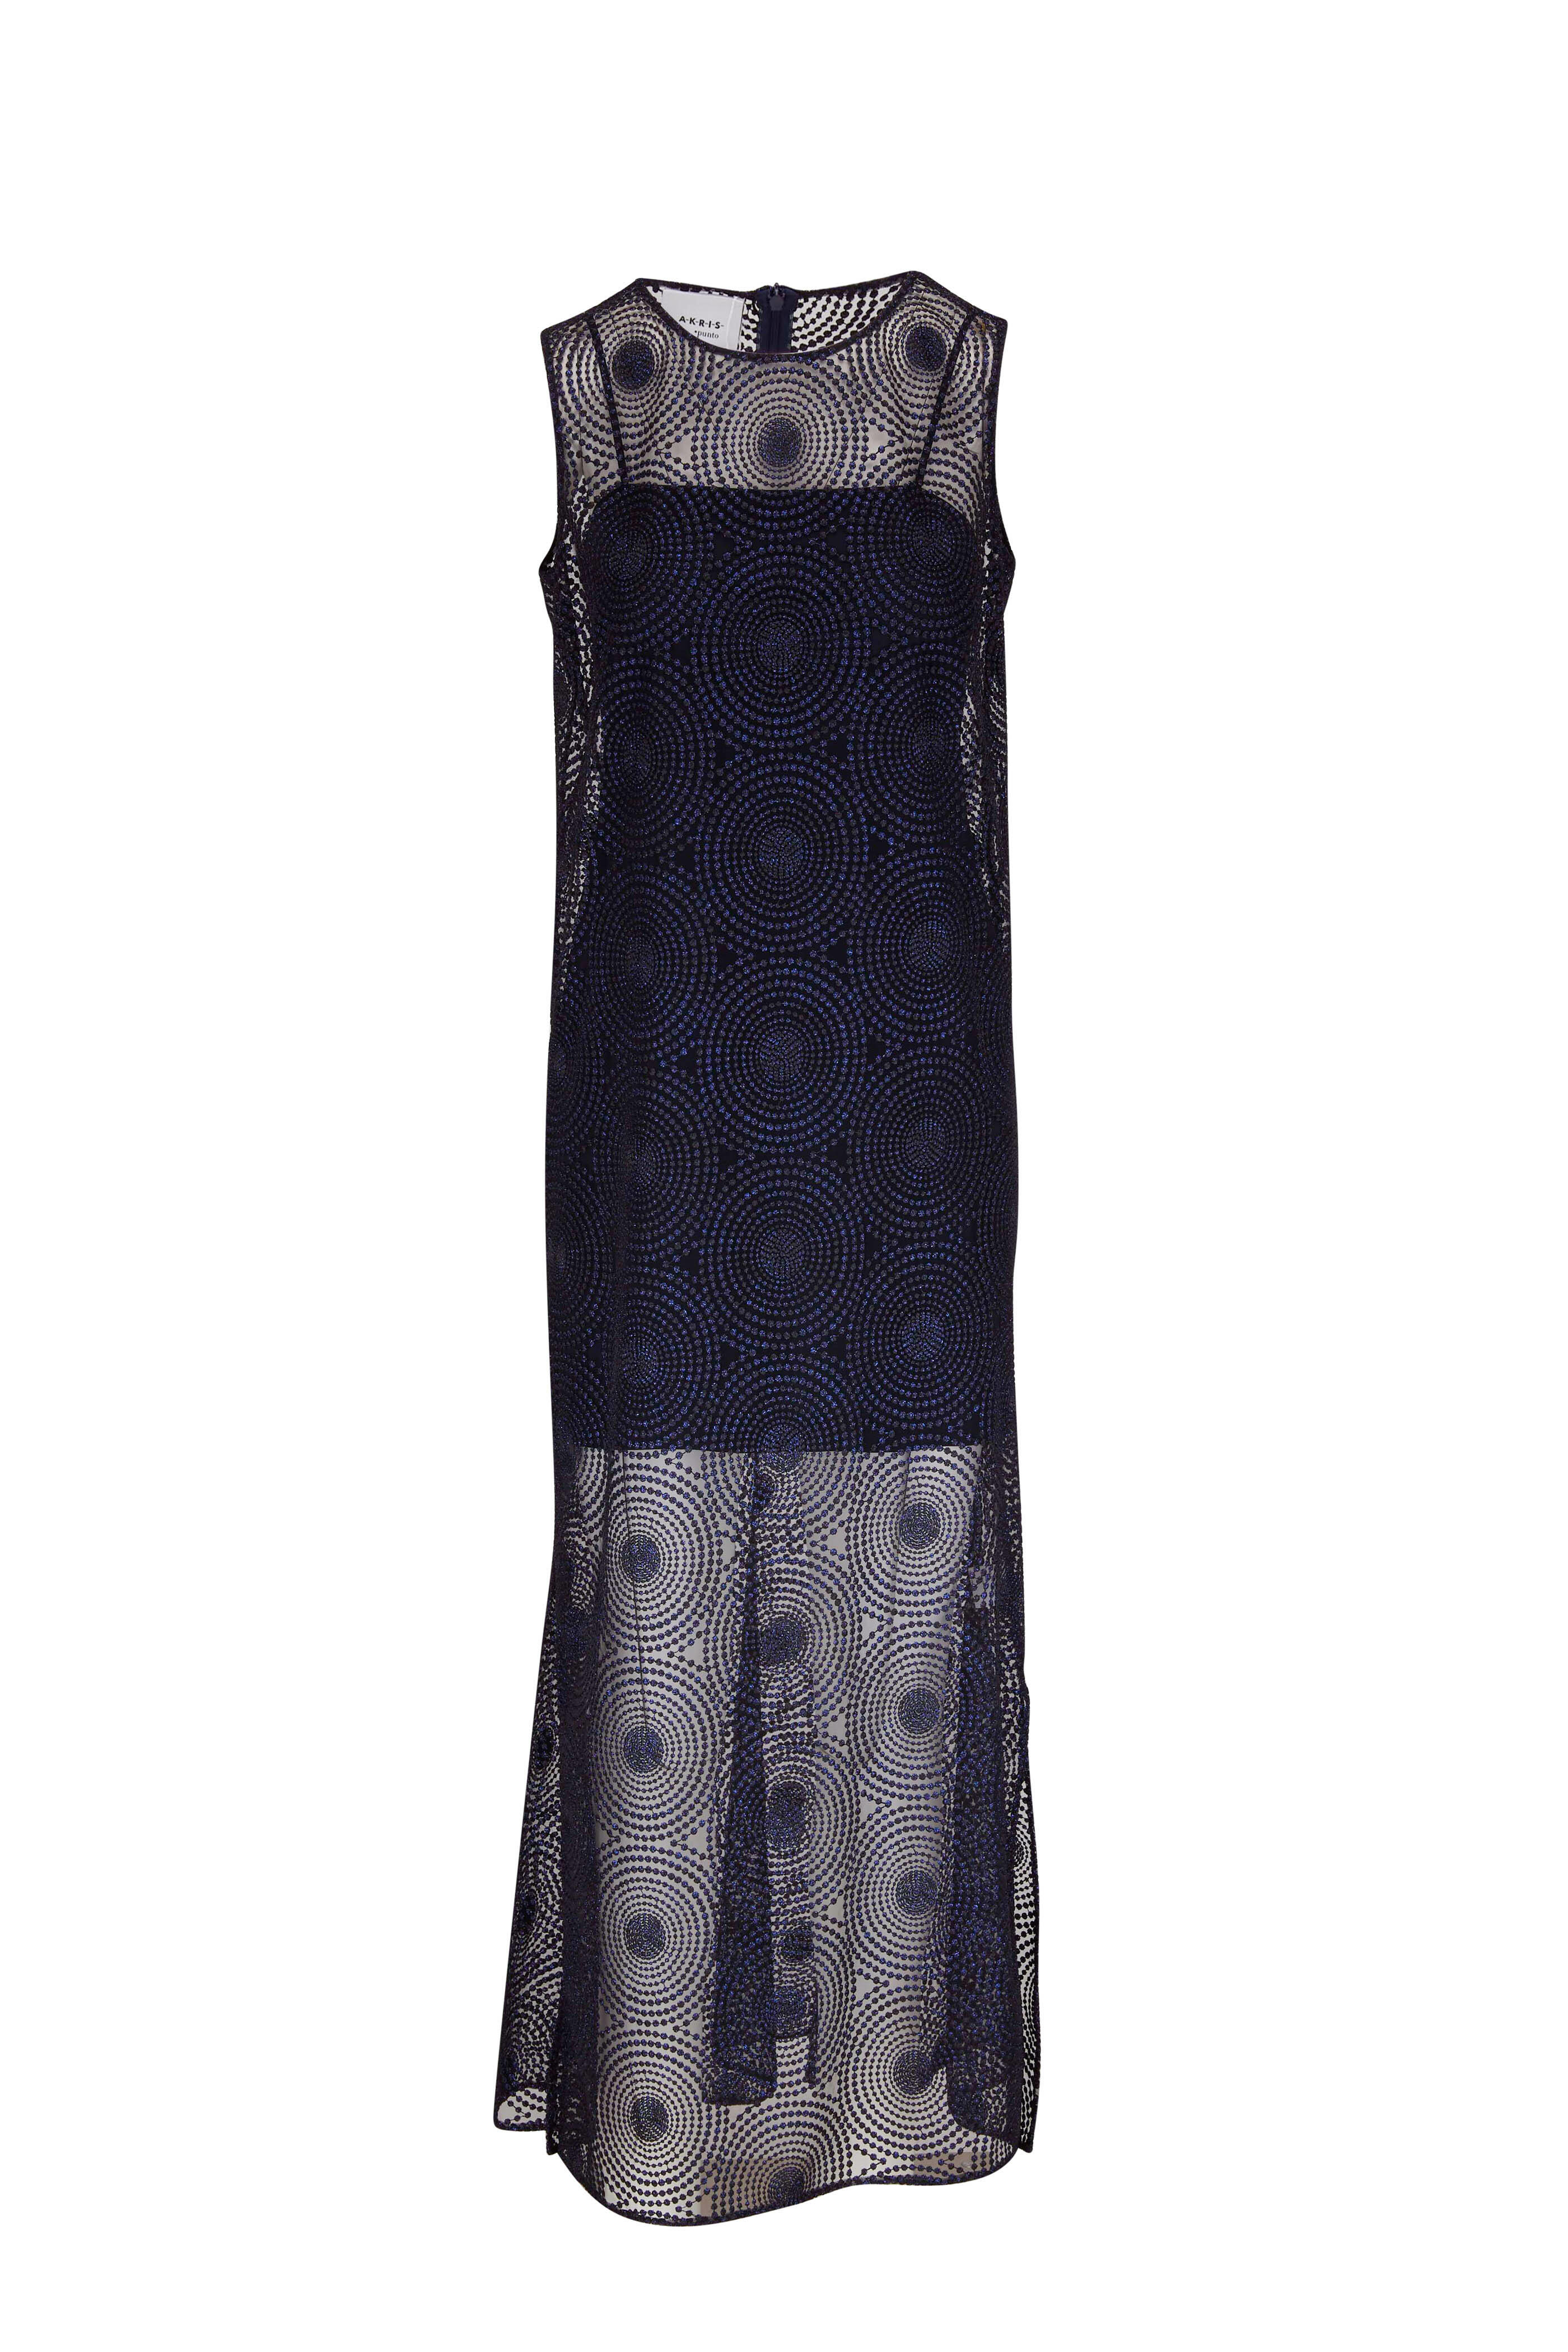 Akris Punto - Metallic 3D Dot Embroidery Midi Dress